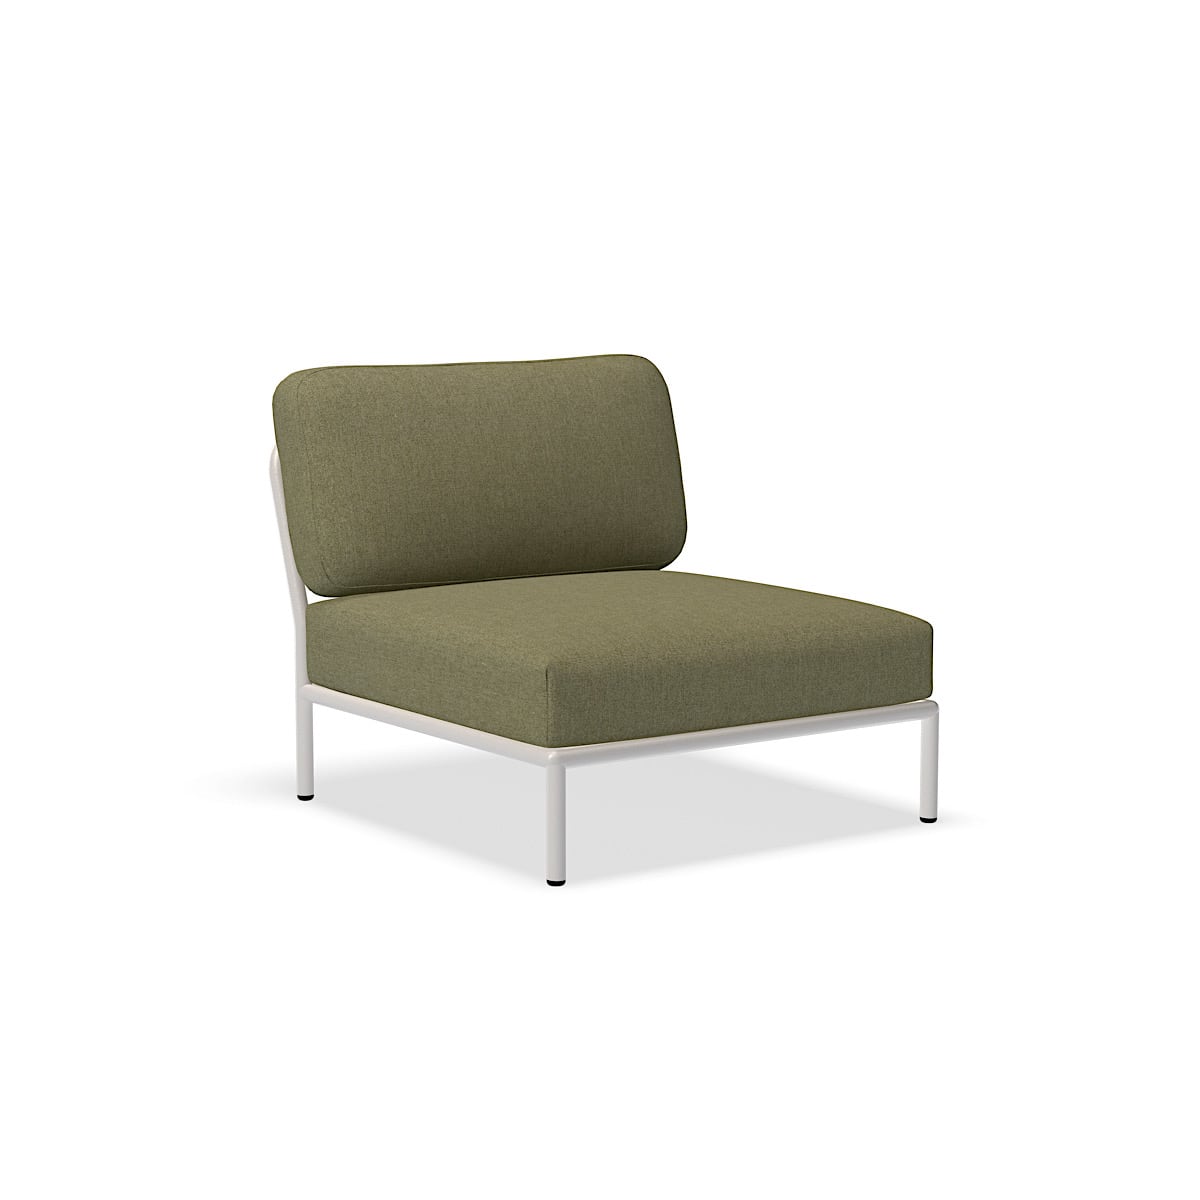 الكرسي - 12205-4243 - كرسي ، ورقة (HERITAGE) ، هيكل أبيض